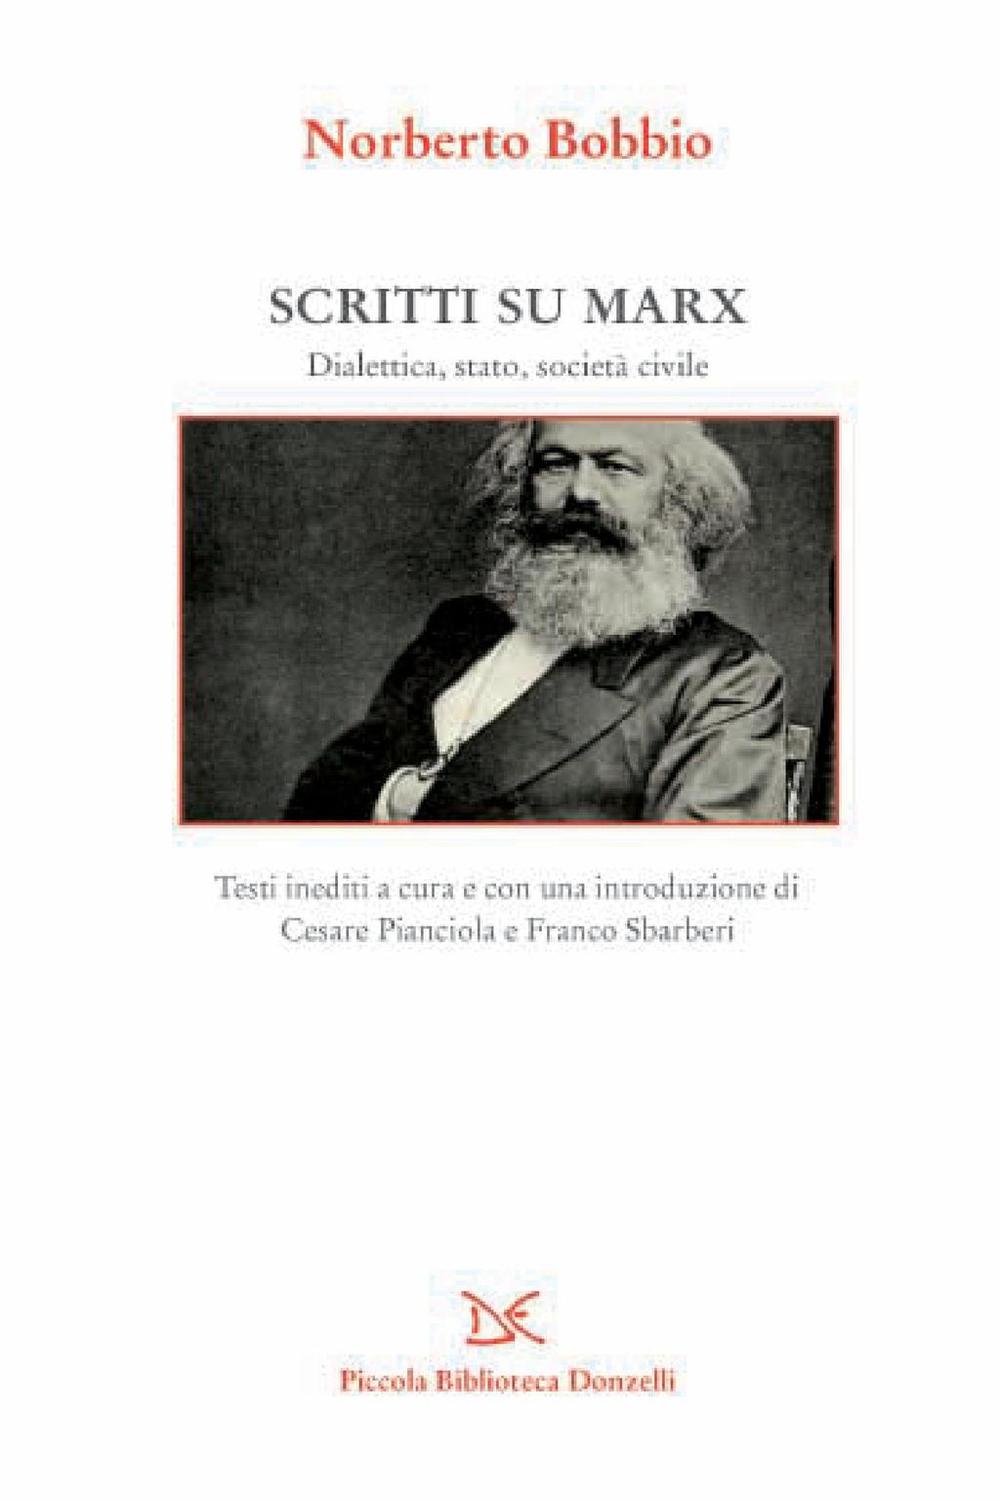 Scritti su Marx - Norberto Bobbio